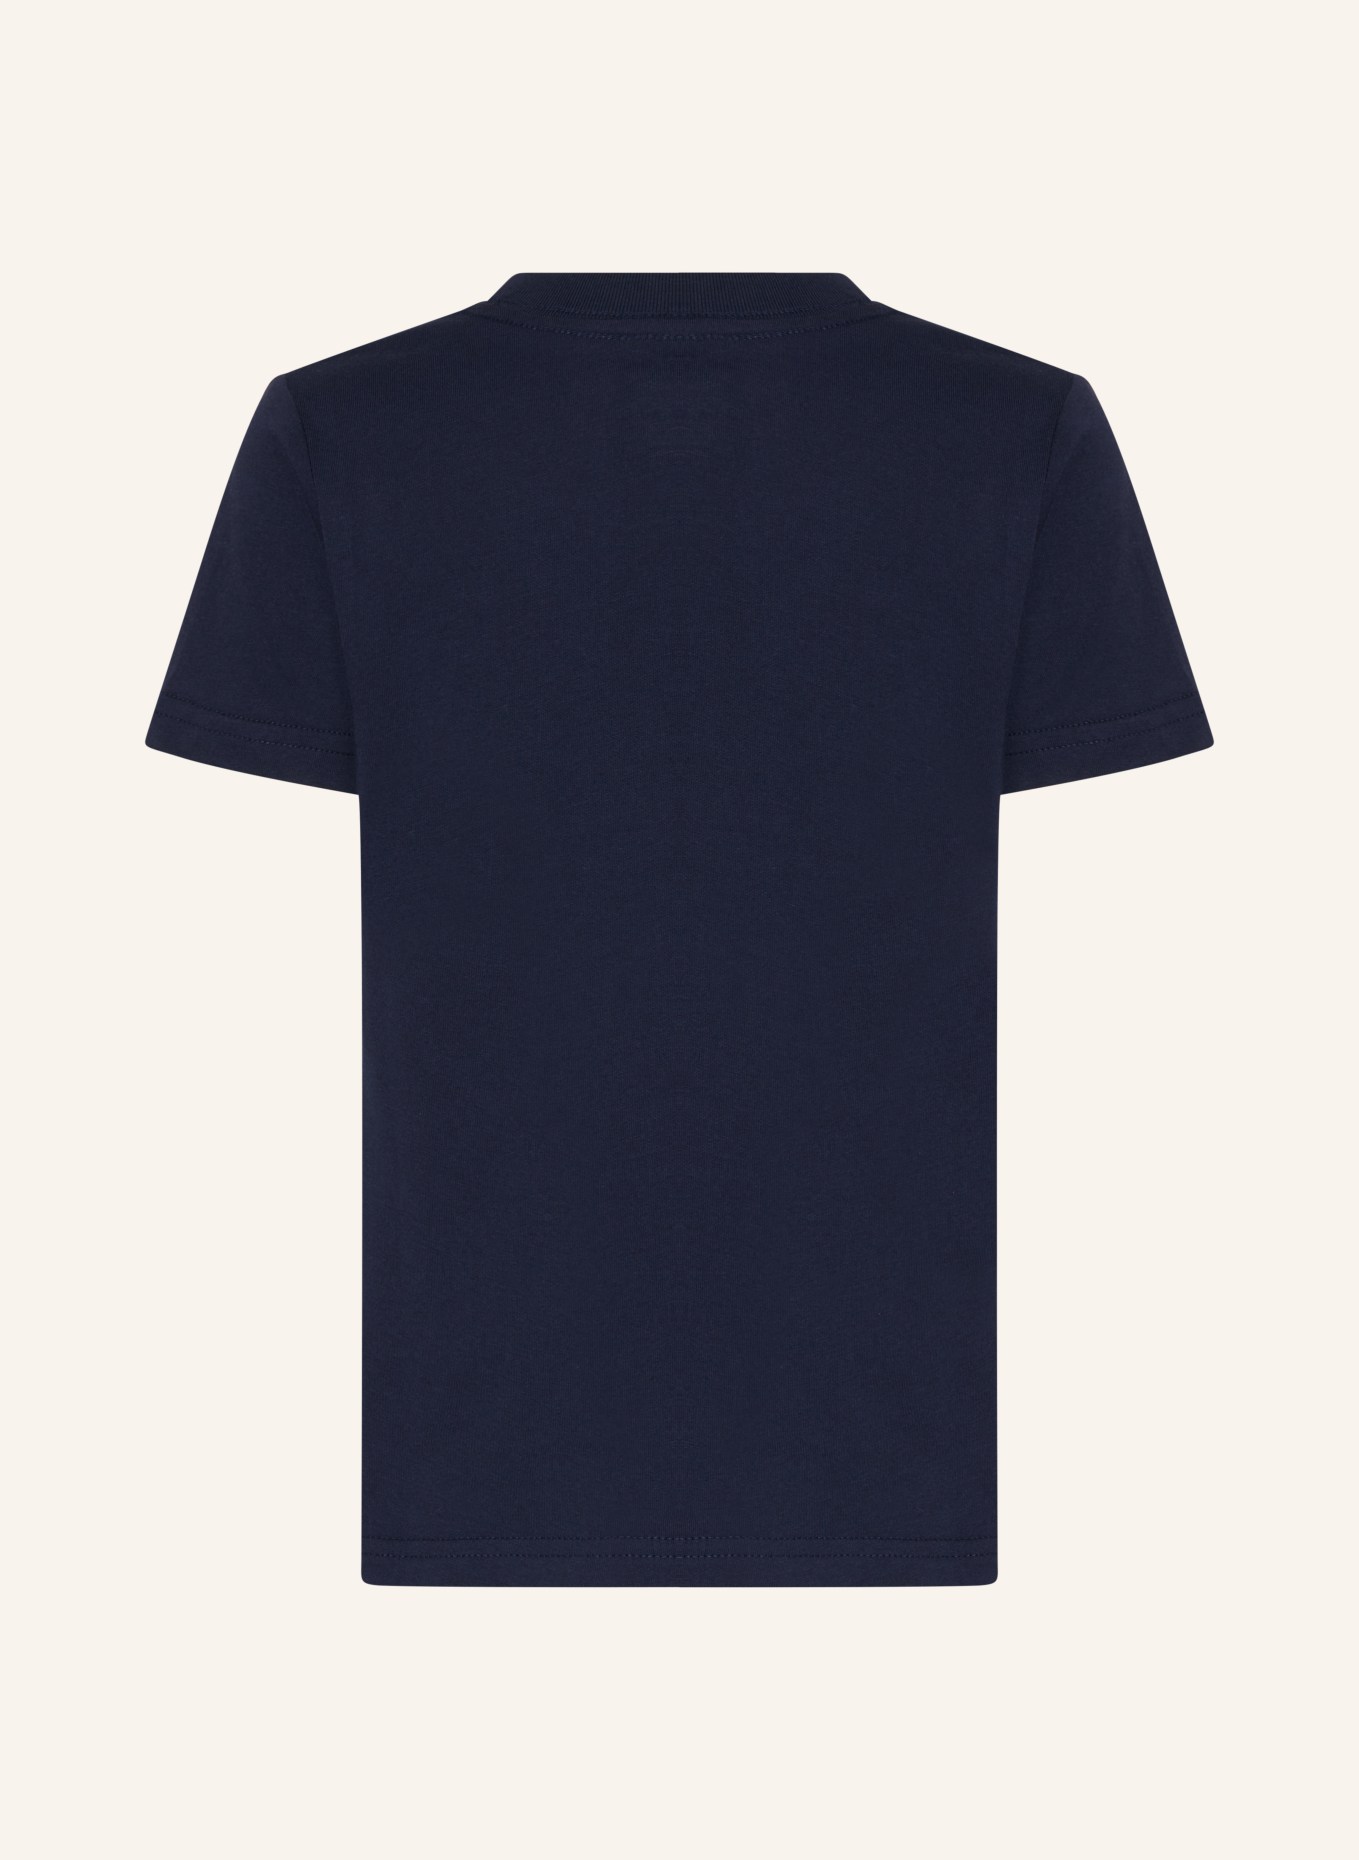 POLO RALPH LAUREN T-Shirt, Farbe: BLAU (Bild 2)